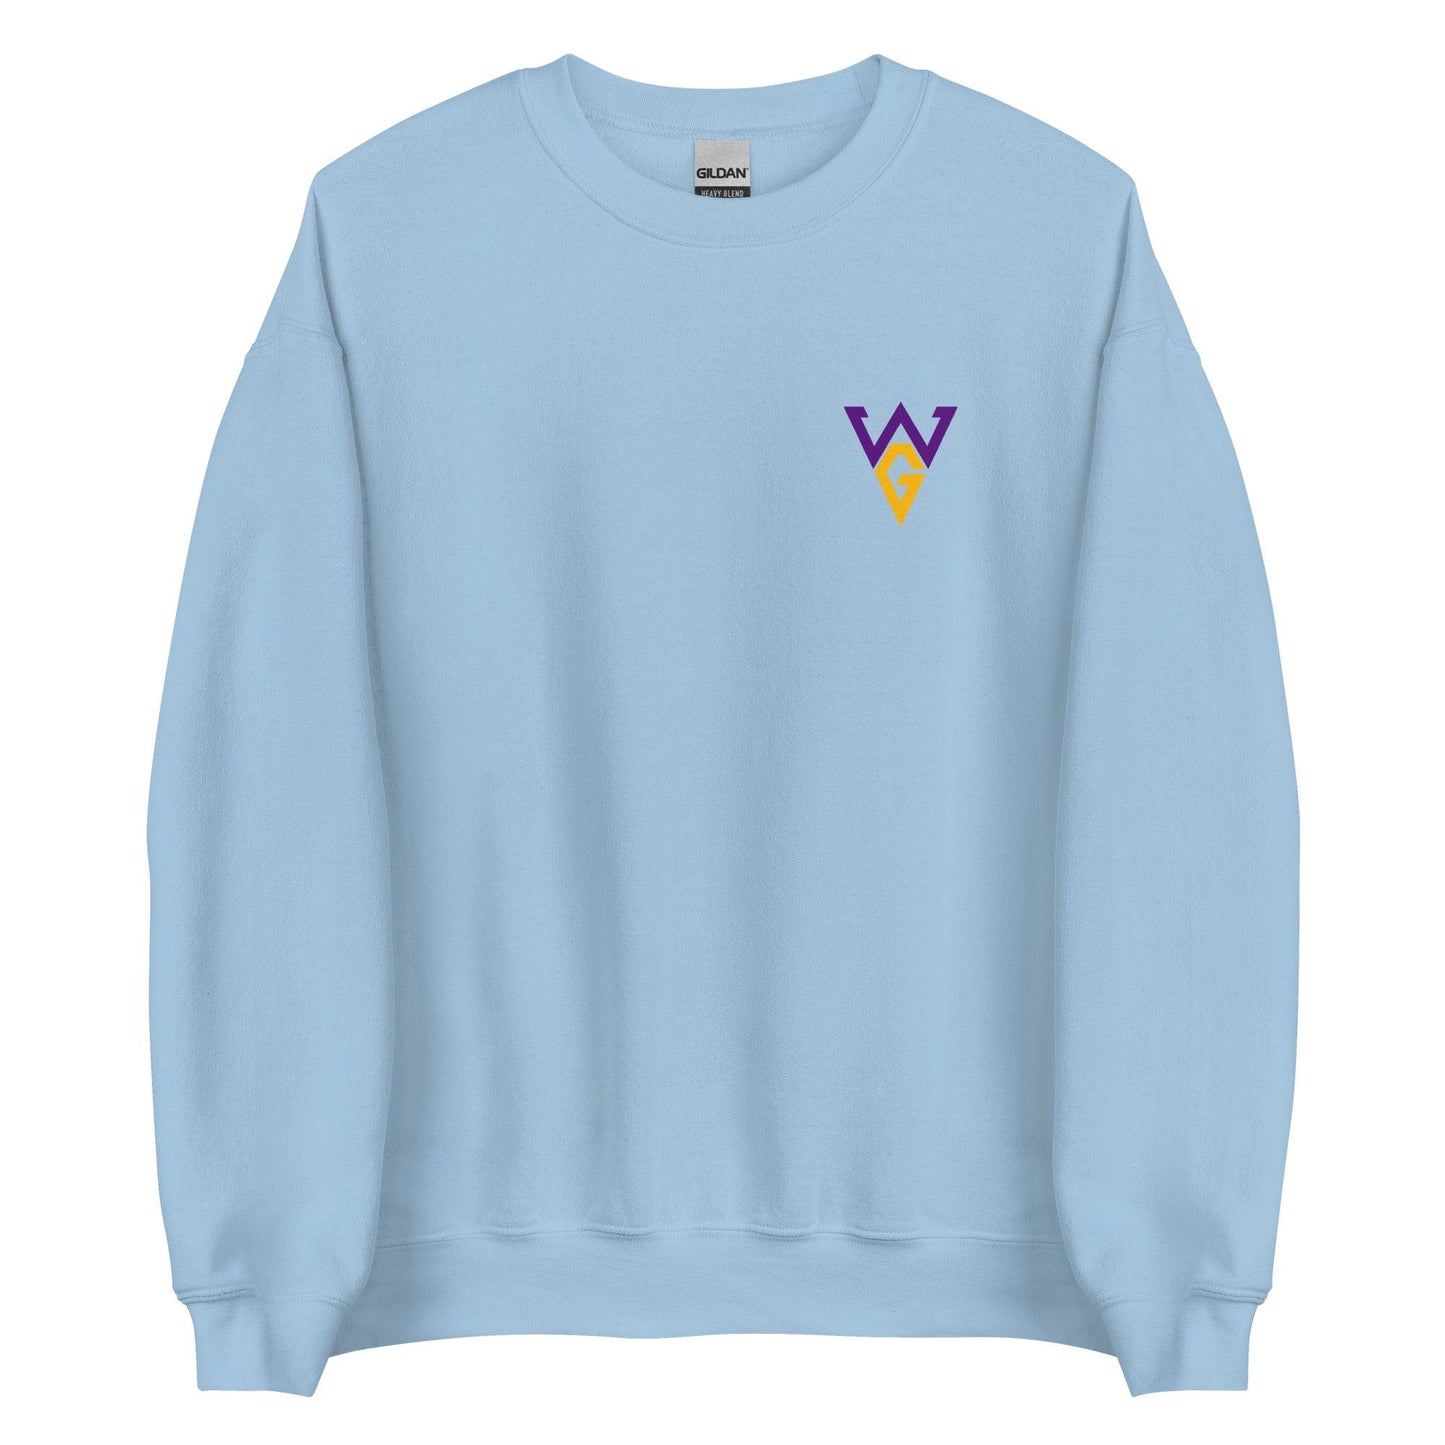 Woo Governor "Essential" Sweatshirt - Fan Arch